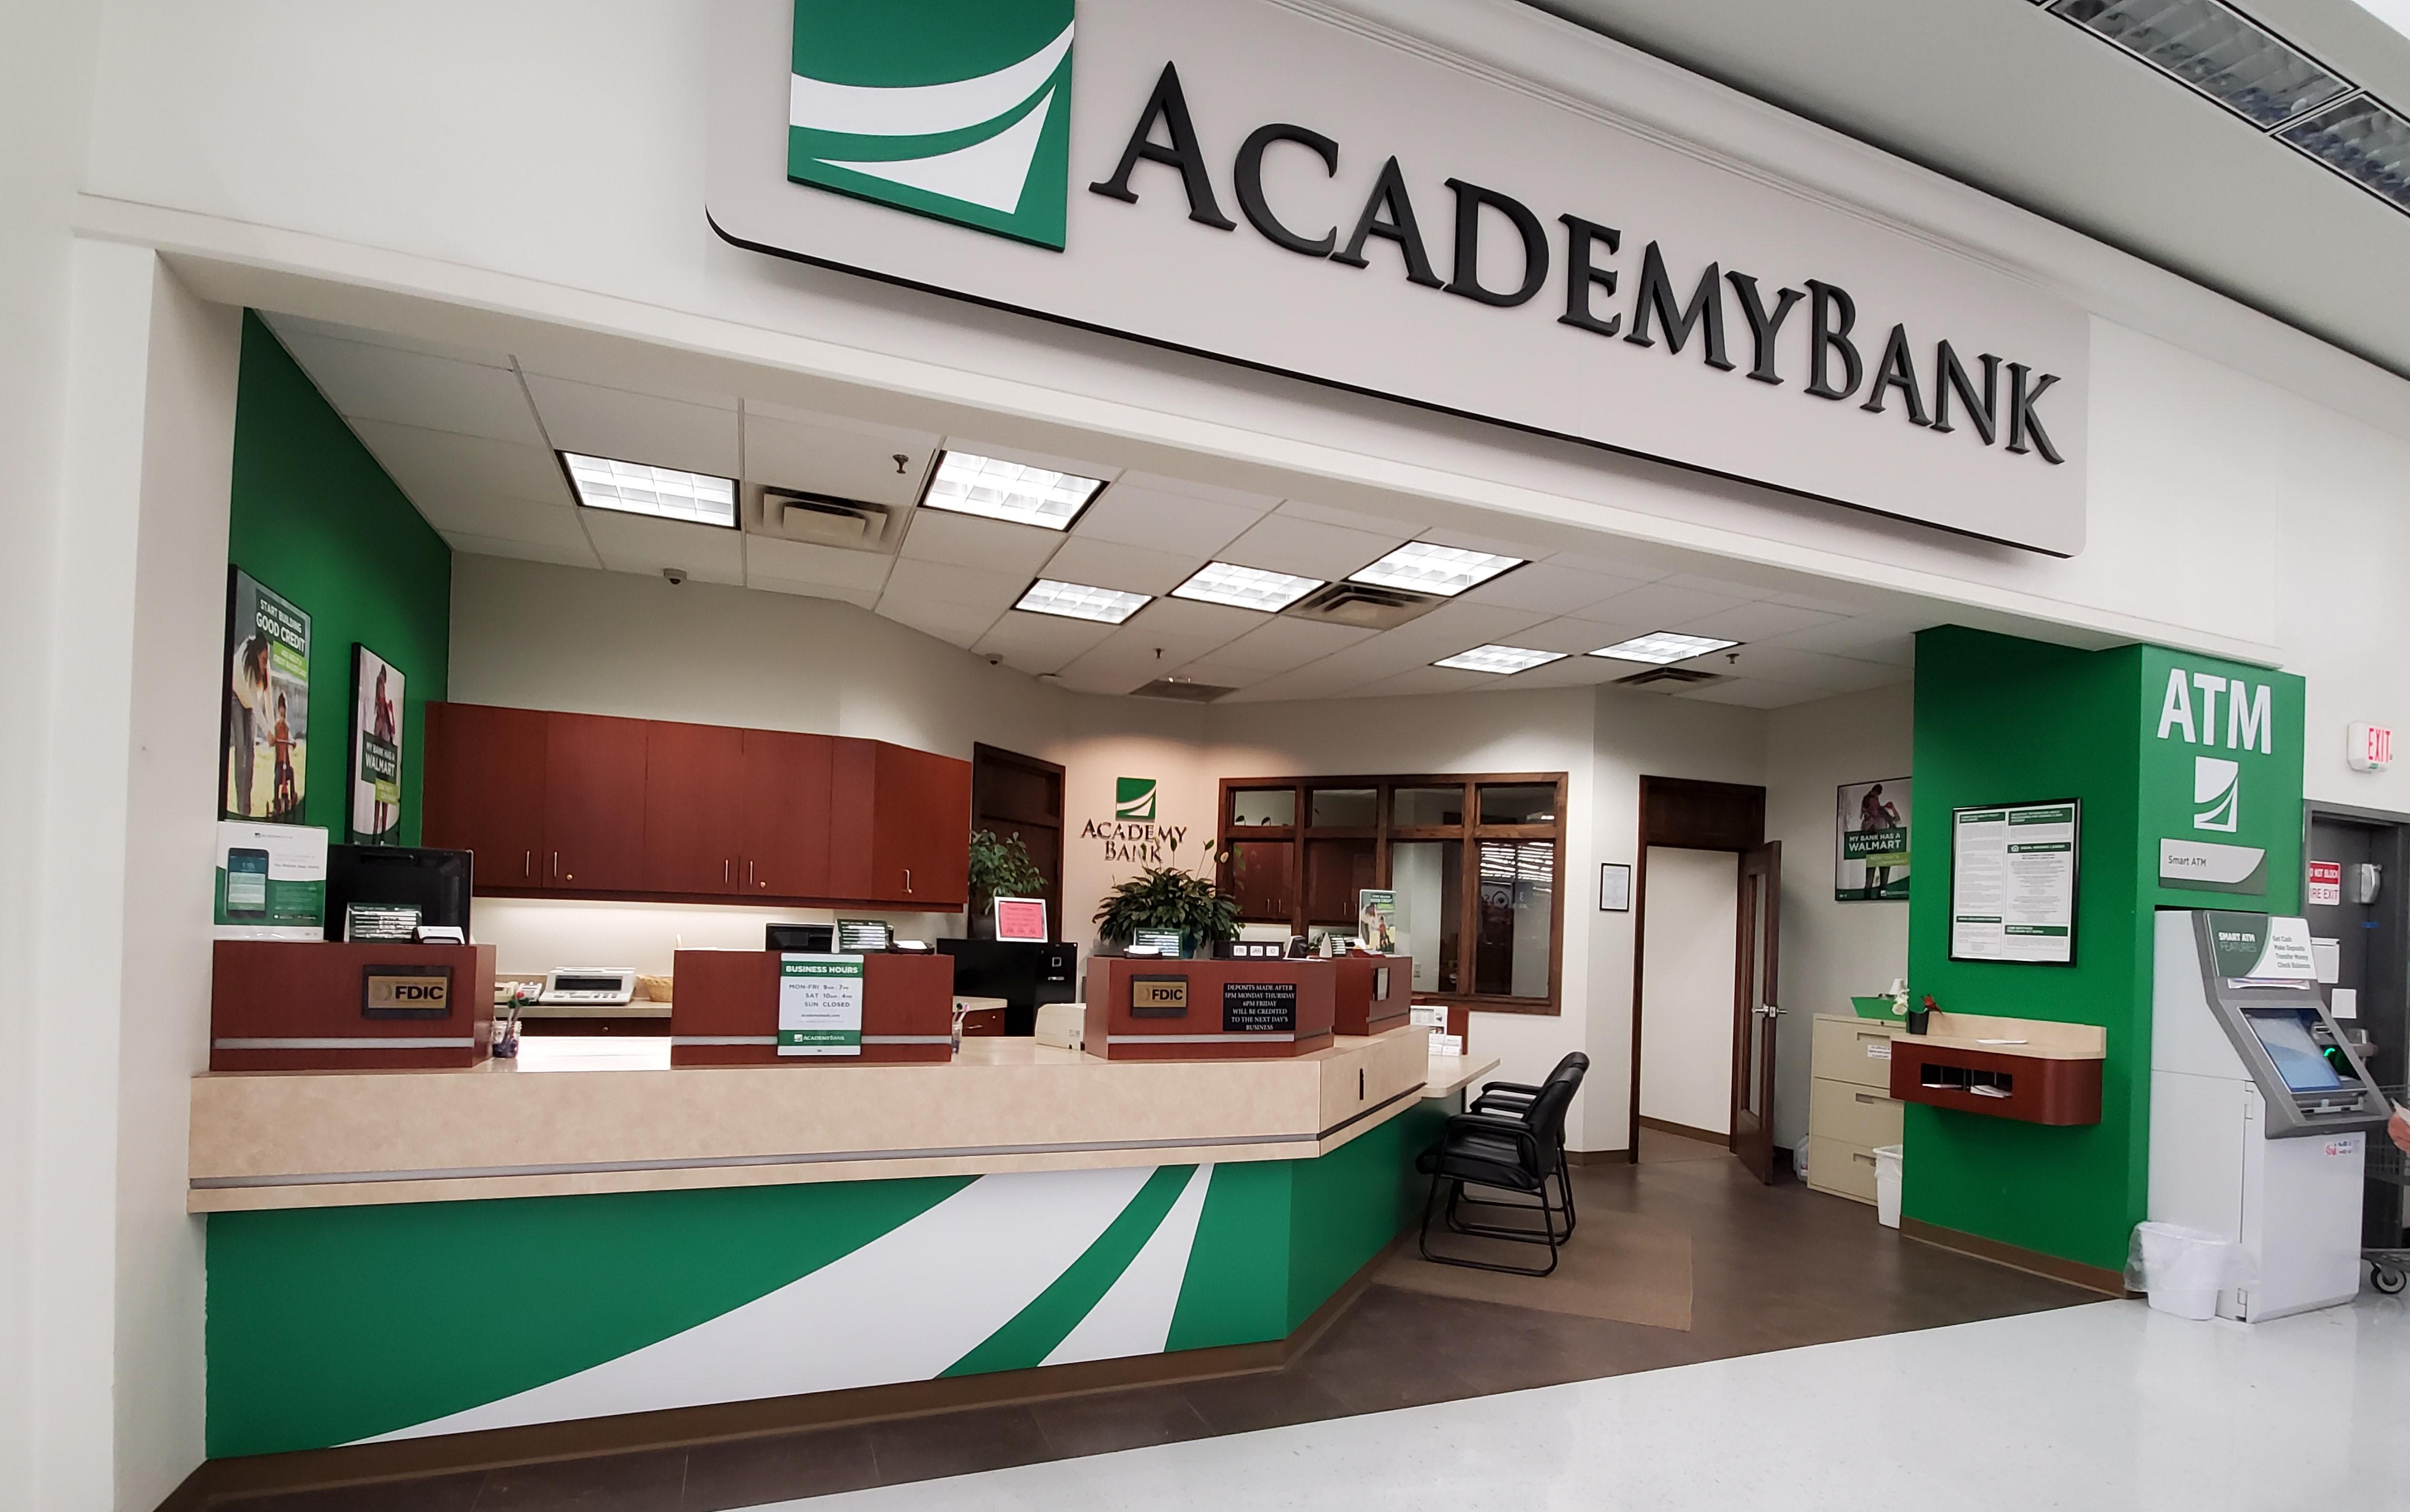 Academy Bank 908 Walton Way Richmond Mo 64085 - Ypcom